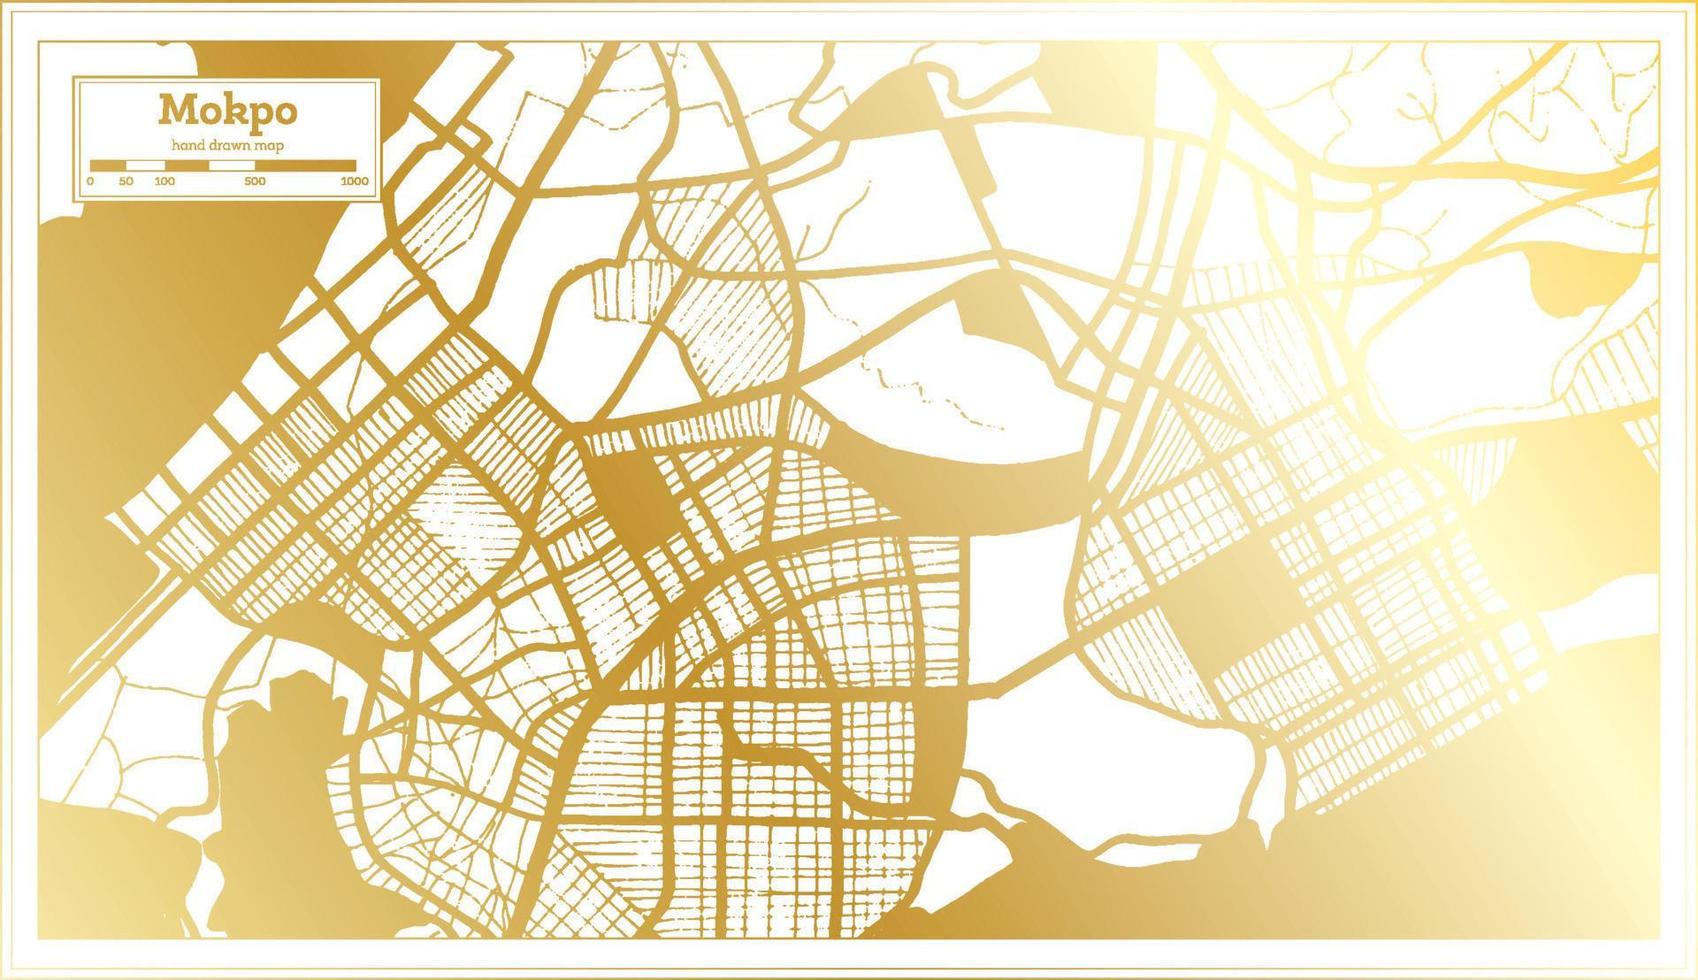 mokpo söder korea stad Karta i retro stil i gyllene Färg. översikt Karta. vektor